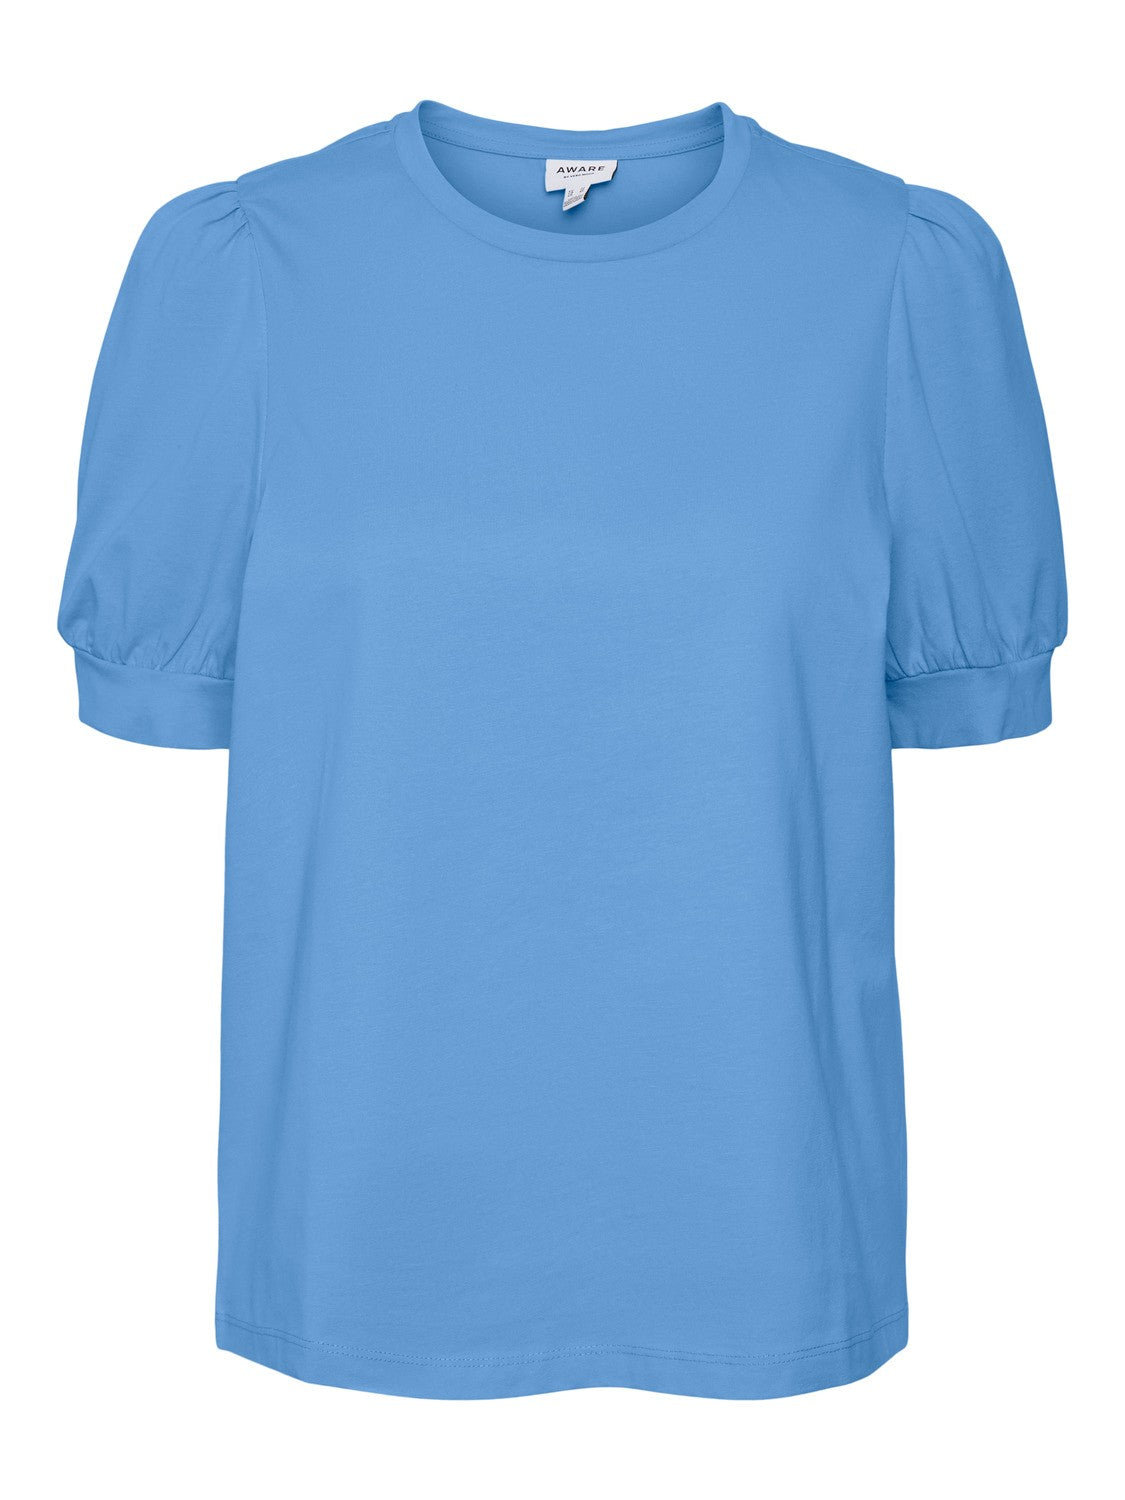 Kerry t-shirt blue